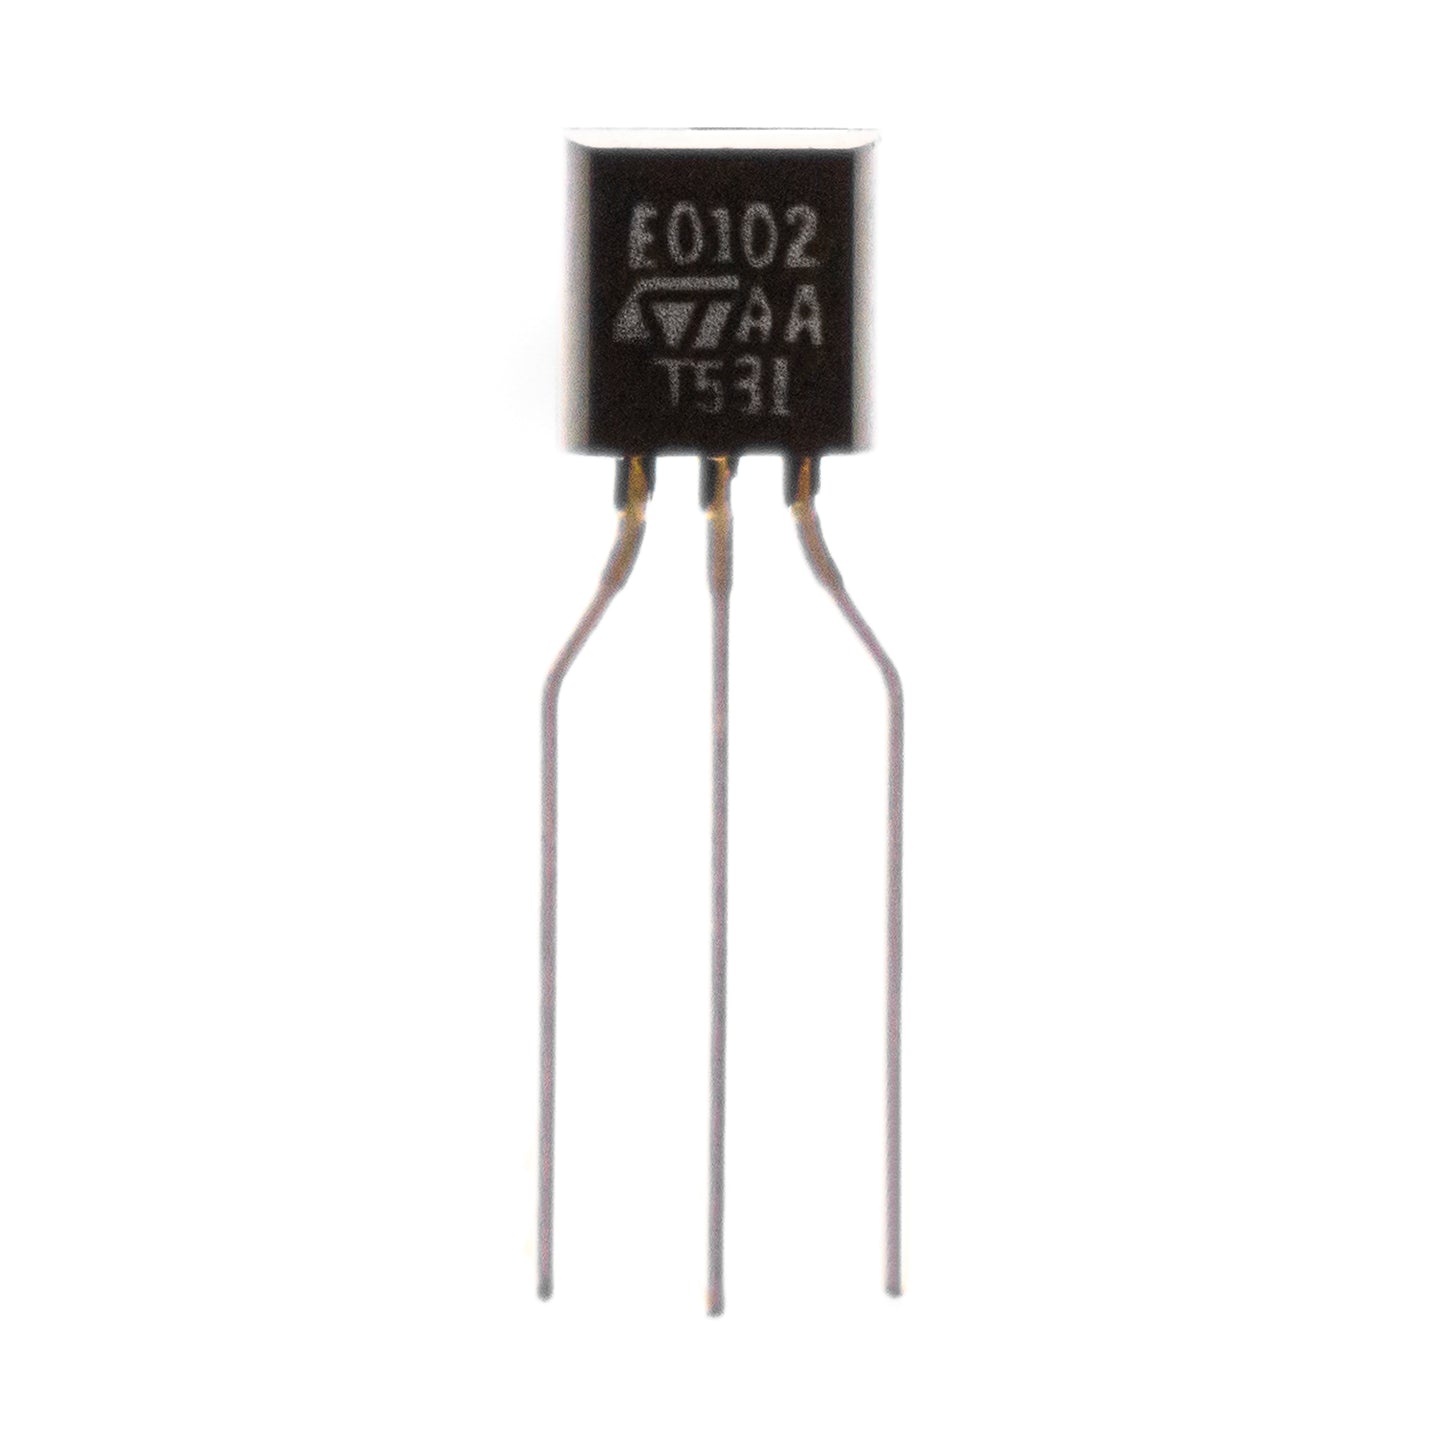 STMicroelectronics STAAT531 circuito integrato, transistor, componente elettronico, 3 contatti